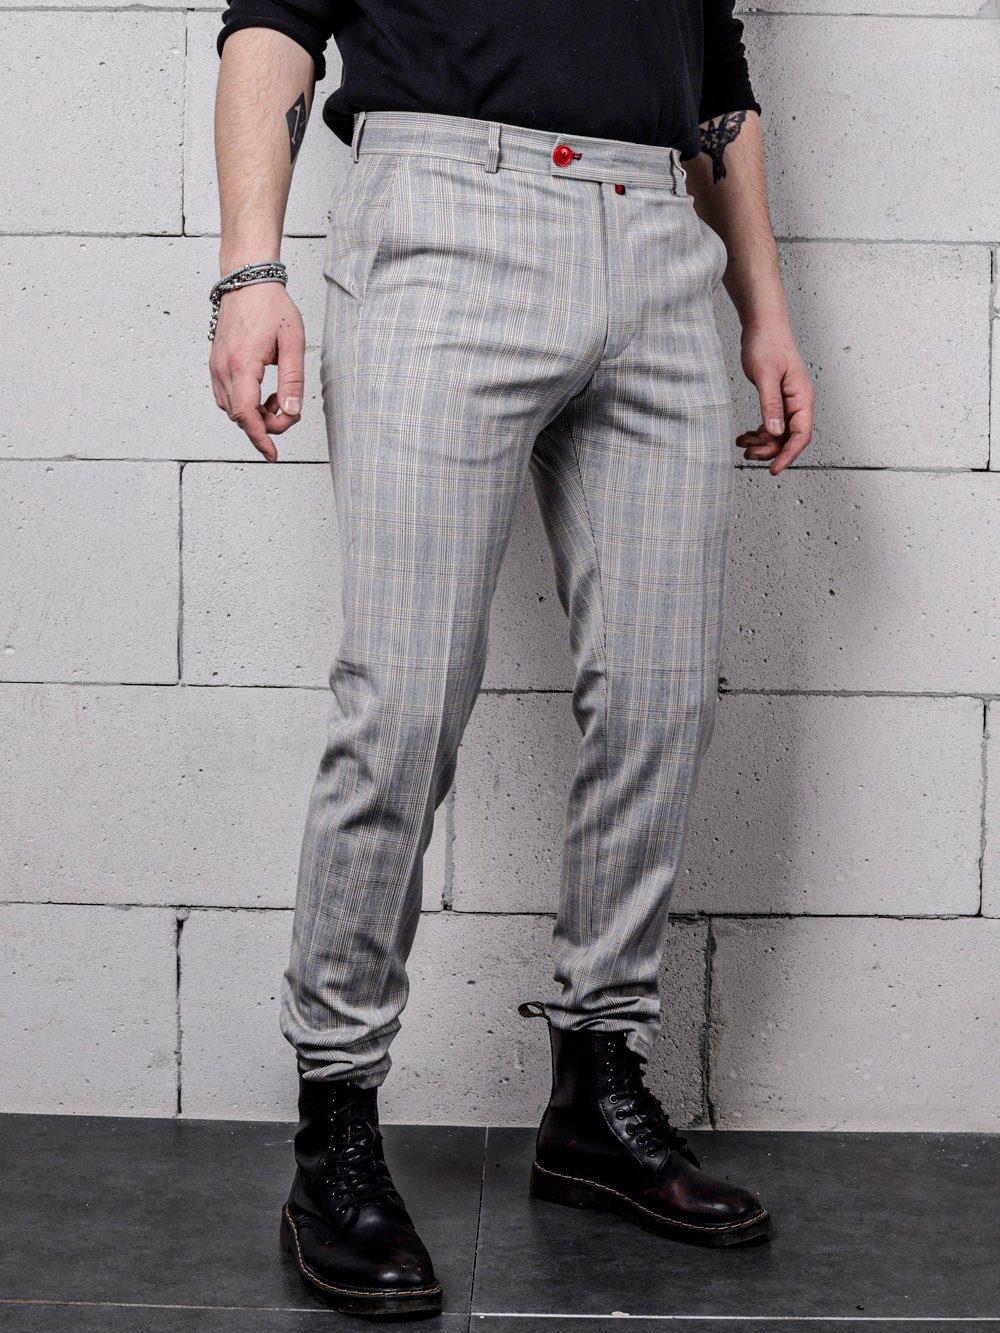 Lower body side shot of a man wearing VANILLA LATTE Striped Pants by SERNES